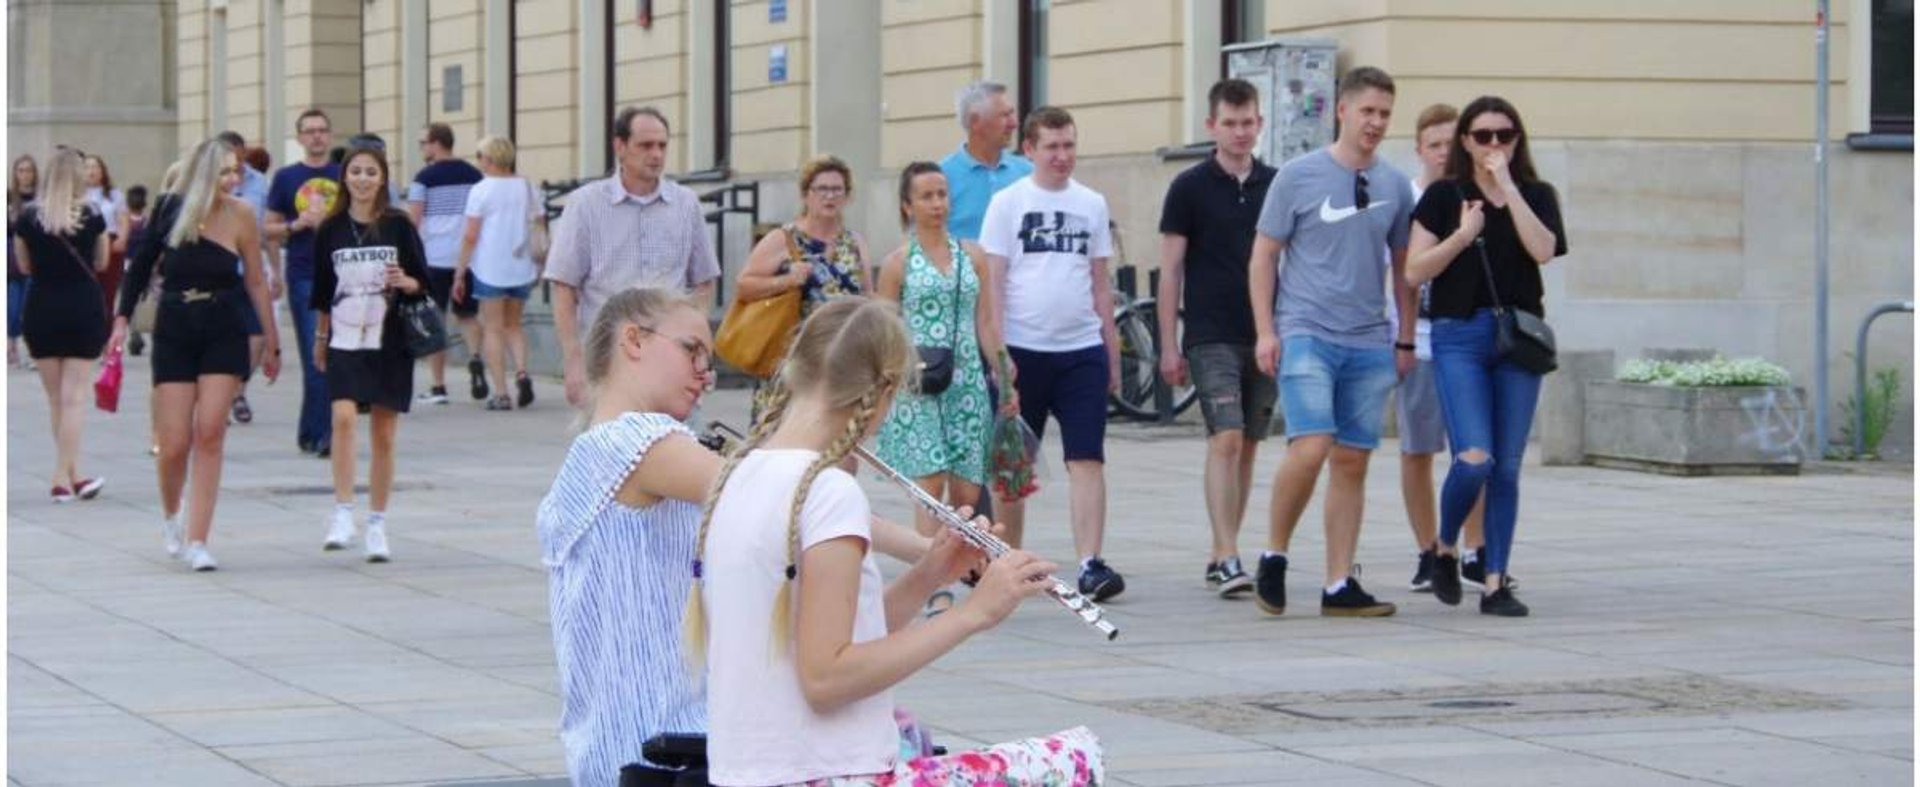 PHOTO: ZOFIA I MAREK BAZAK / EAST NEWS Warszawa N/Z Sztuka uliczna na warszawskiej Starowce - dziewczeta grajace na instrumentach muzycznych, busking